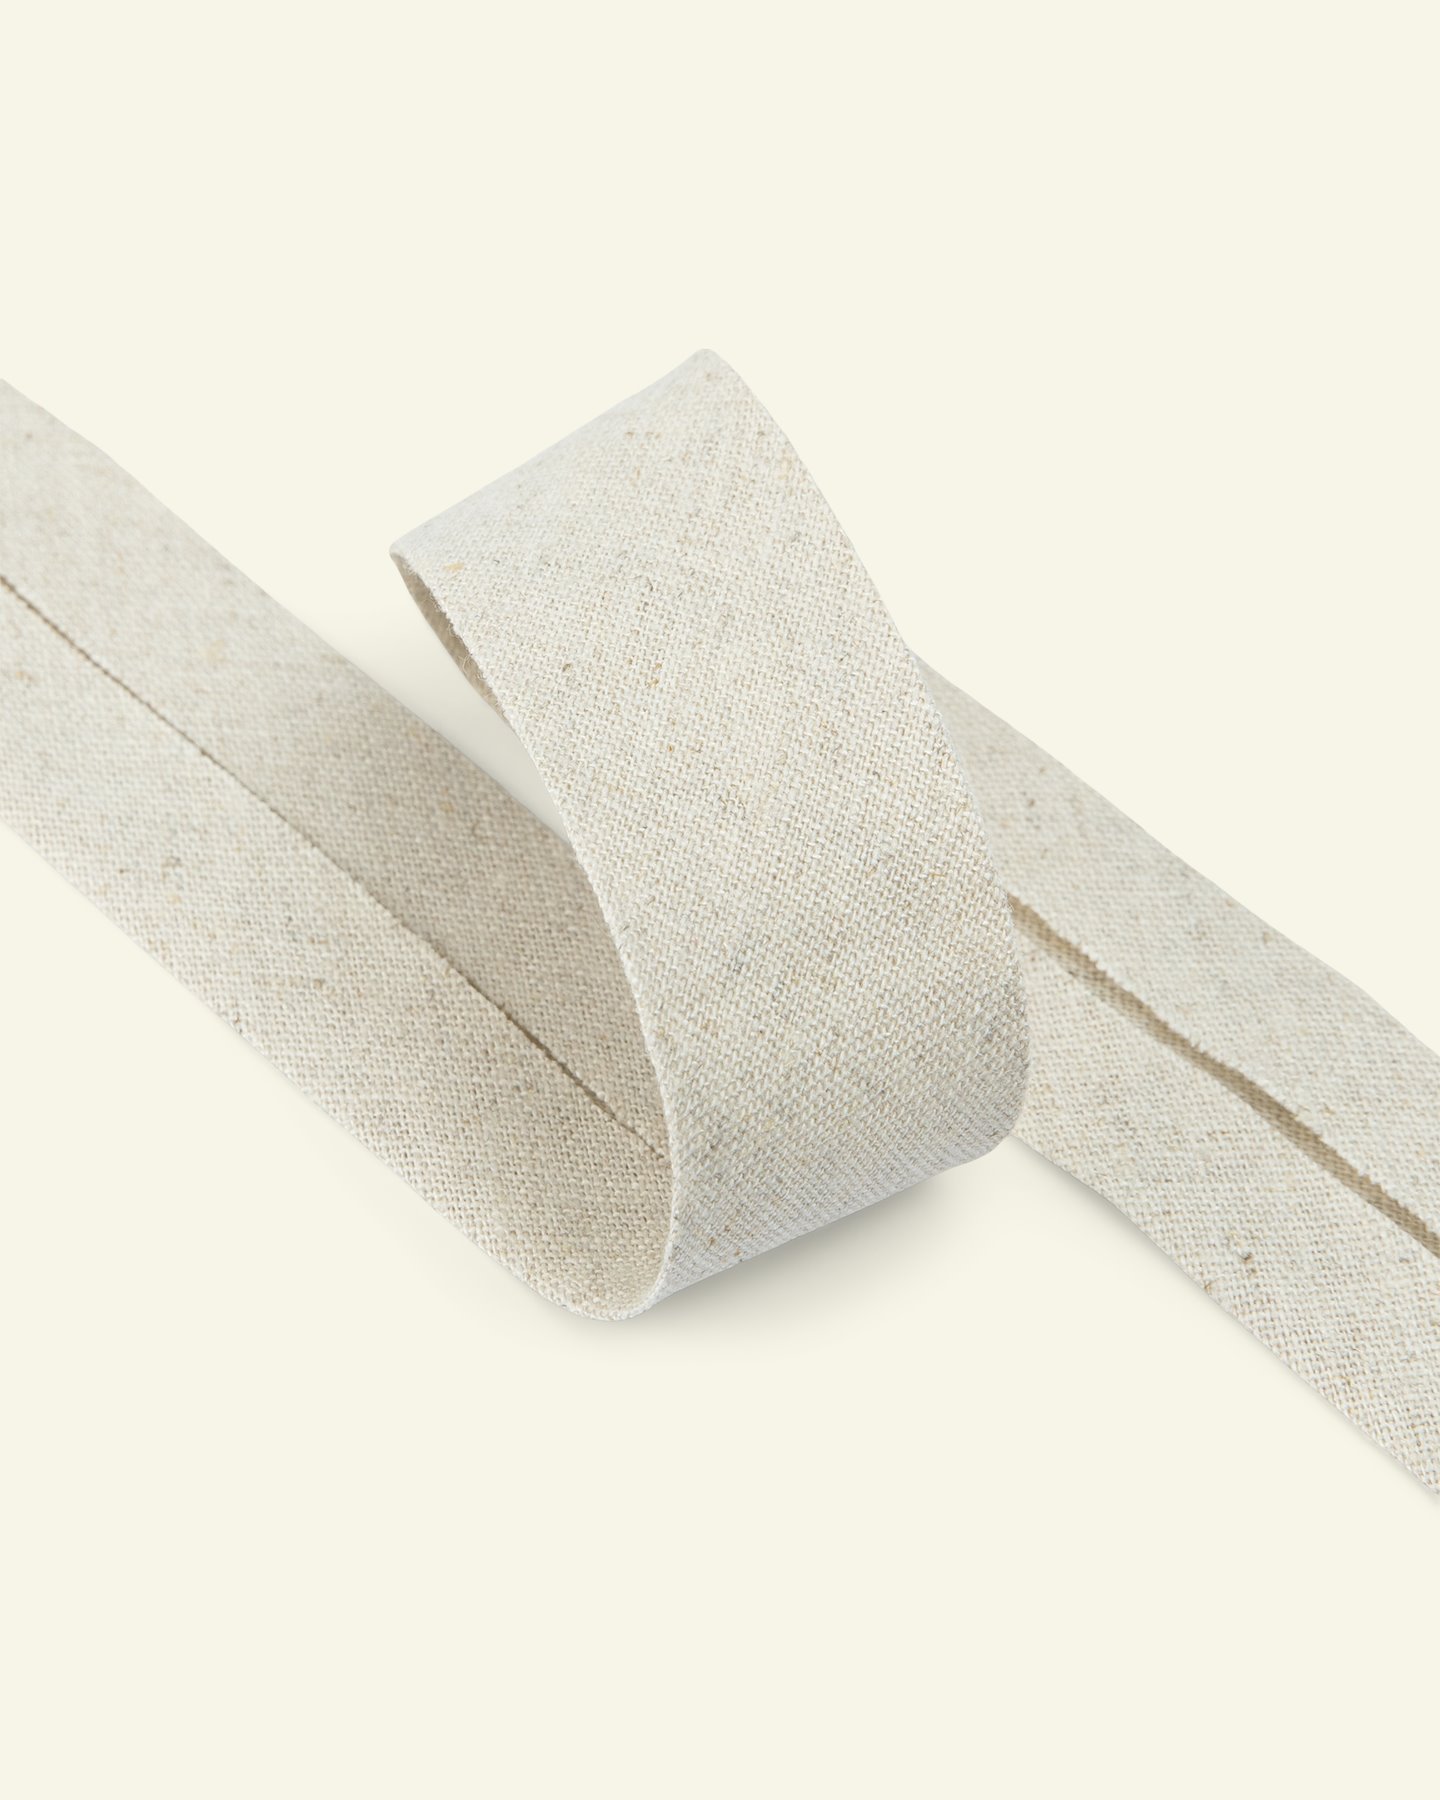 Biastape linen/cotton 30mm linen 5m 64046_pack